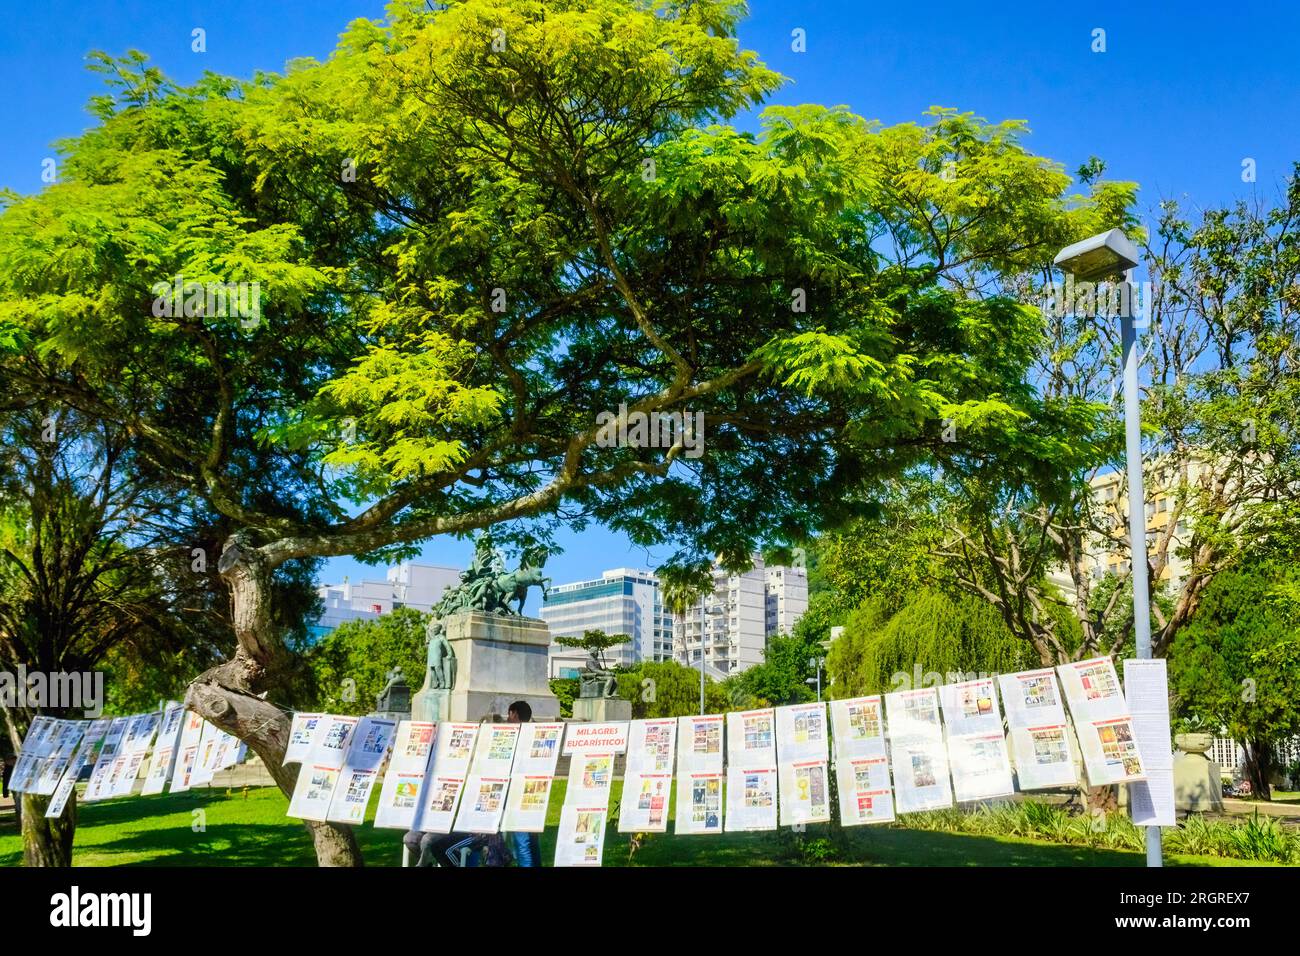 Niteroi, Brasilien, Artikelgruppe zum Verkauf unter einem Baum in einer städtischen Umgebung. Die Ware ist religiöser Natur. Niemand ist am Tatort. Stockfoto